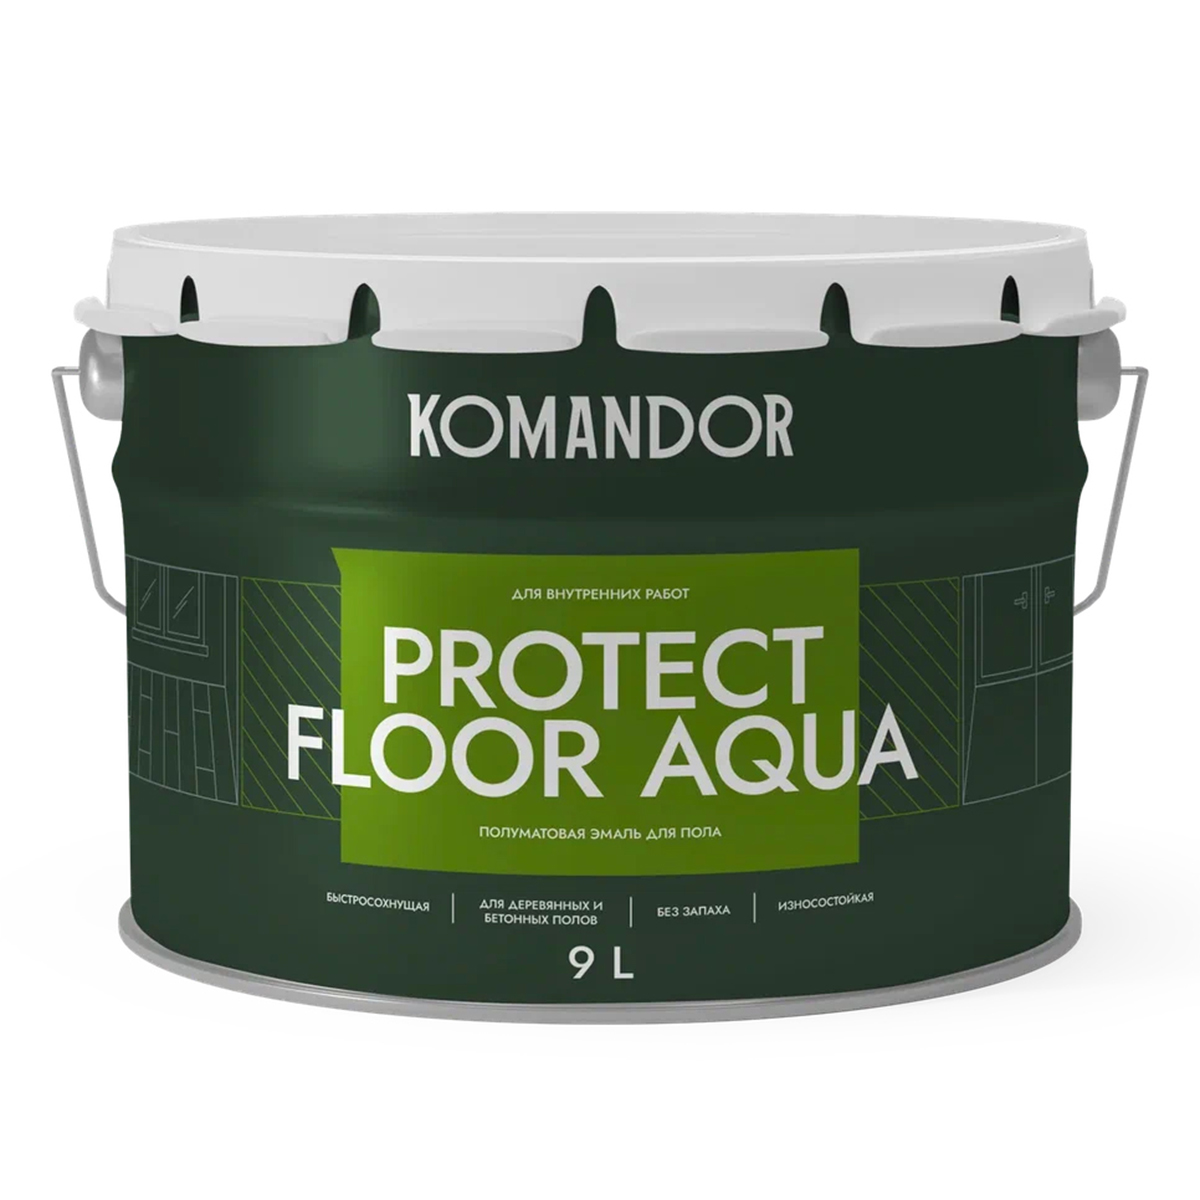 Эмаль для пола Komandor Protect Floor Aqua, акриловая, полумат., база С, бесцветная, 9 л